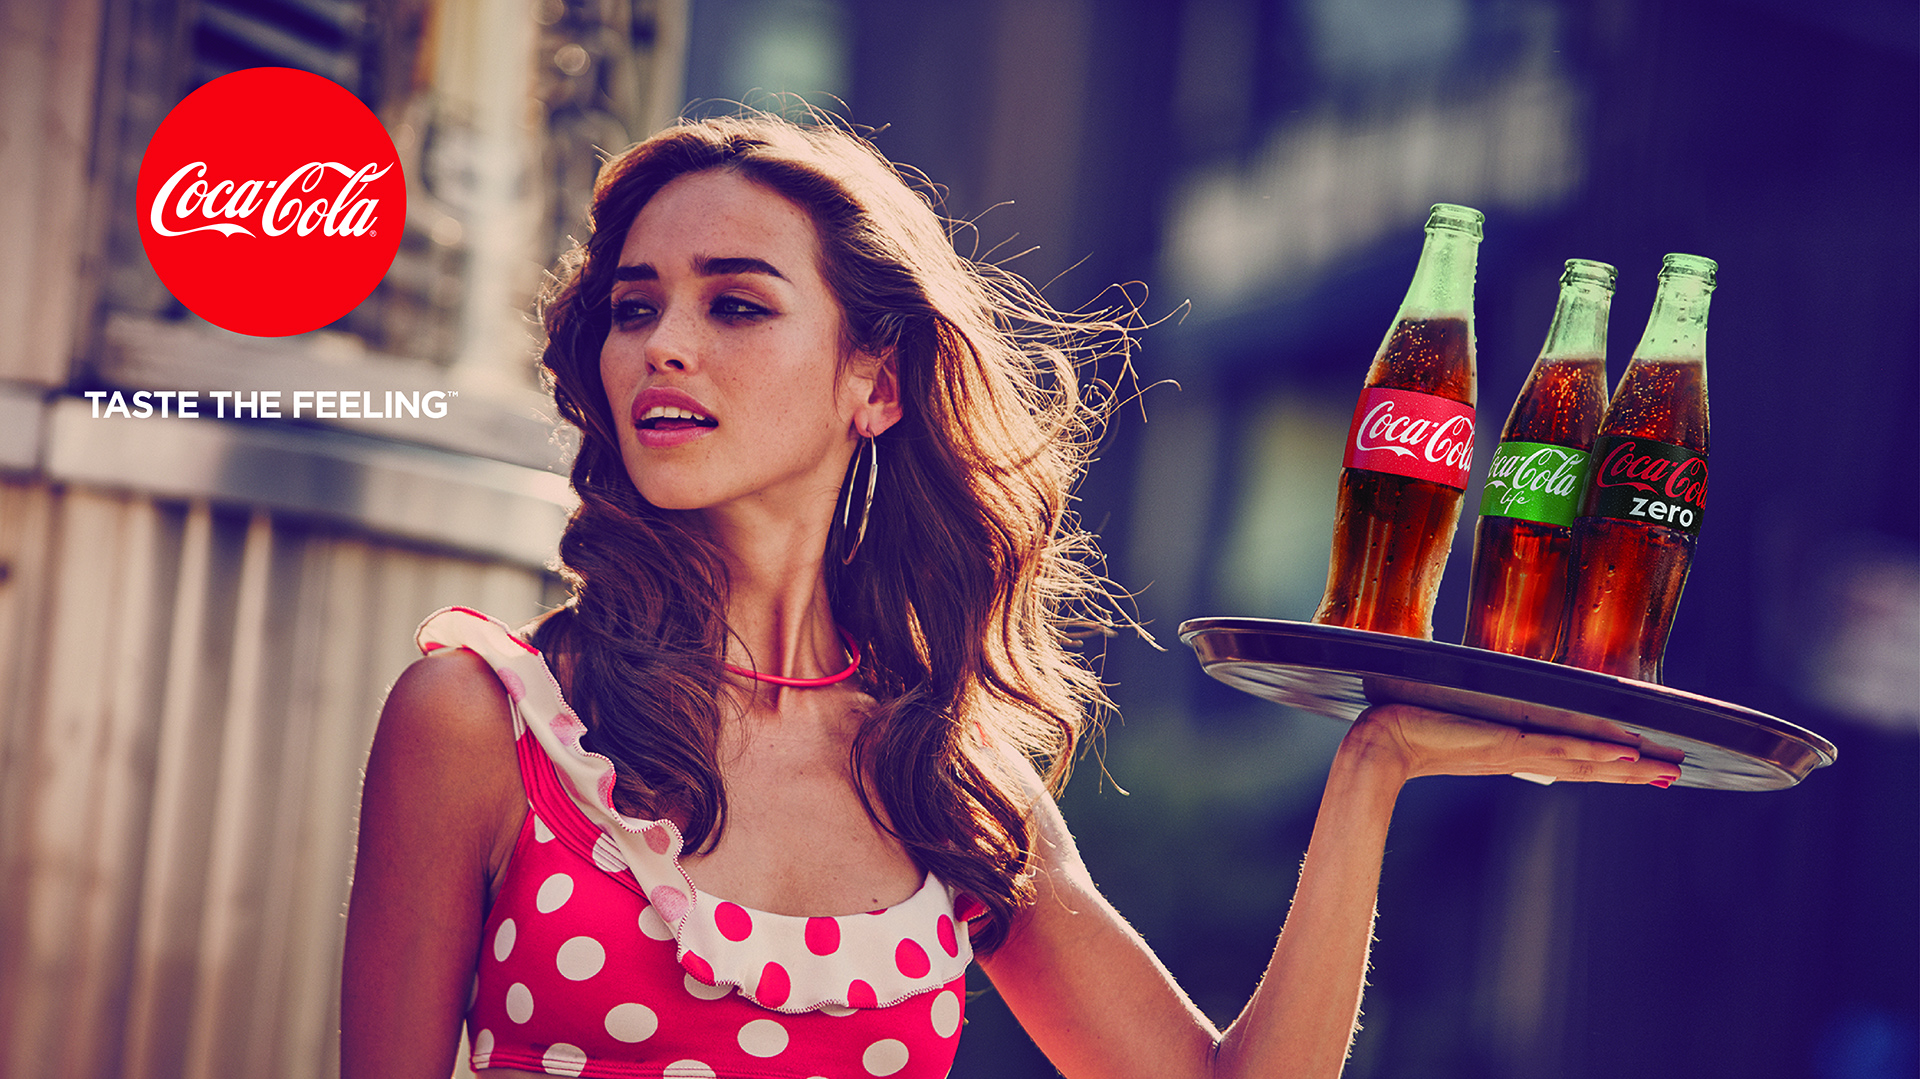 coca cola marketing campaign